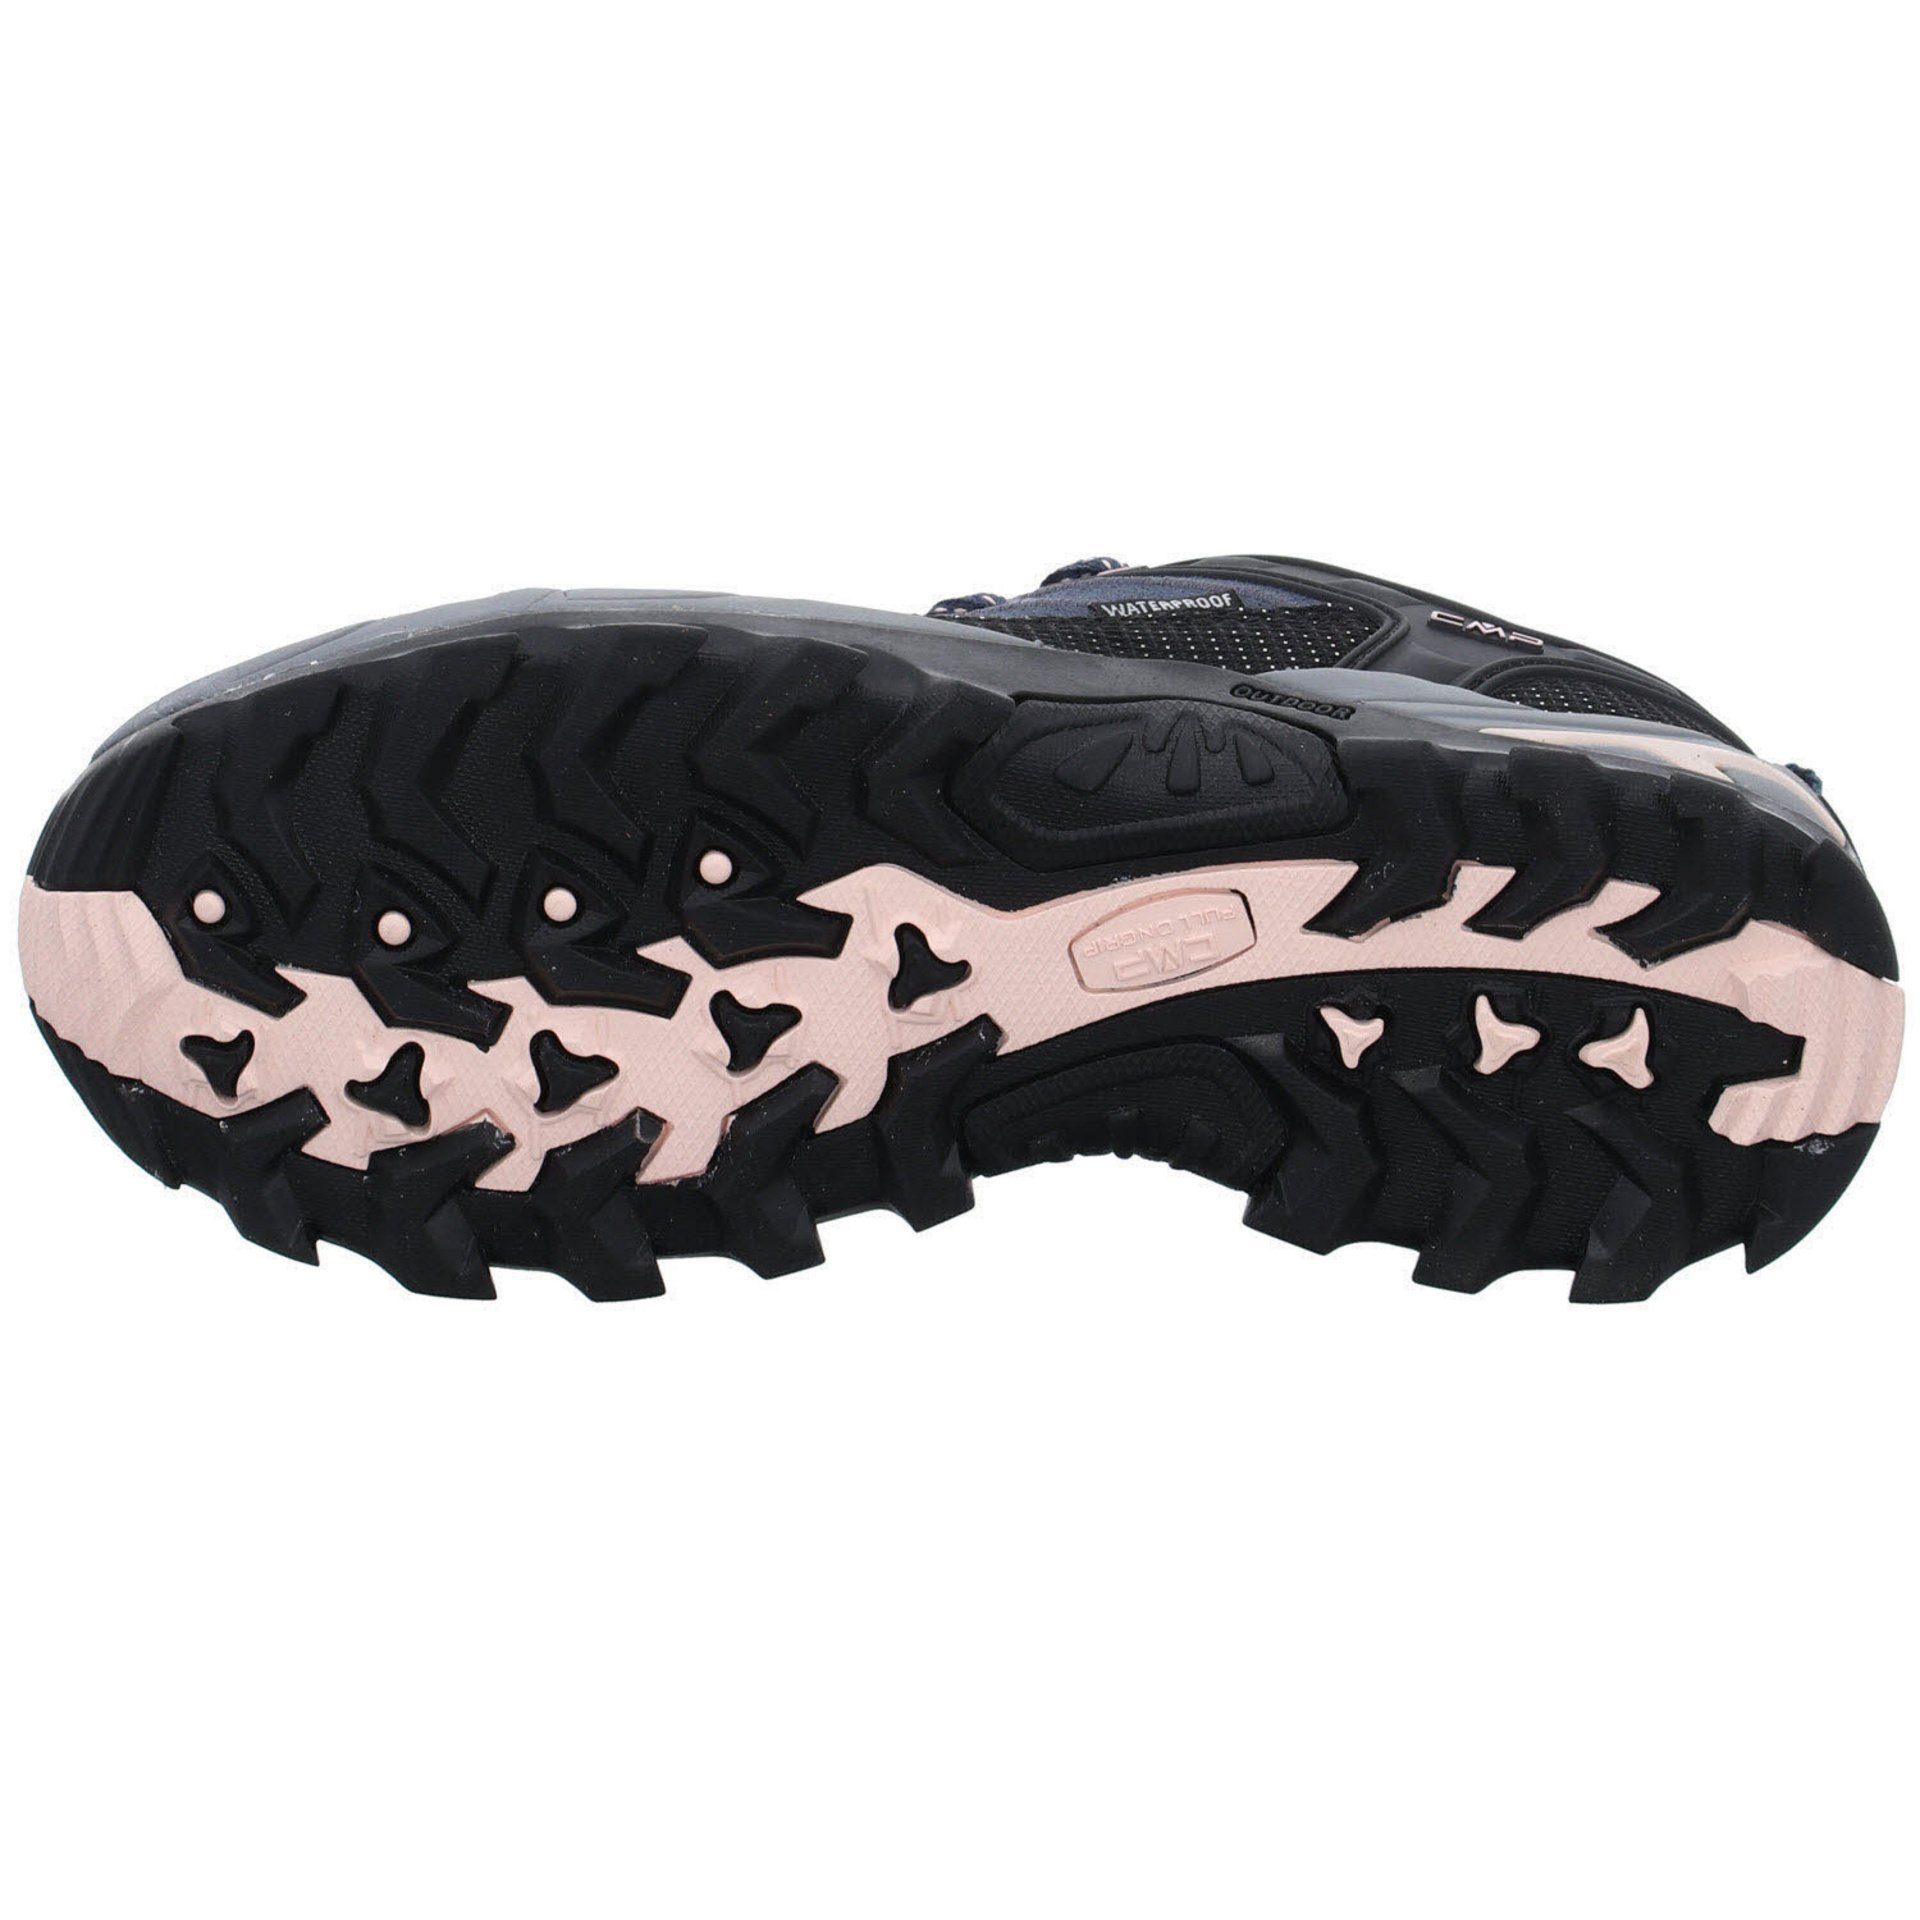 Outdoor Leder-/Textilkombination 53UG Schuhe ASPHALT-ANTRACITE-ROSE Outdoorschuh Outdoorschuh Low Riegel CMP Damen